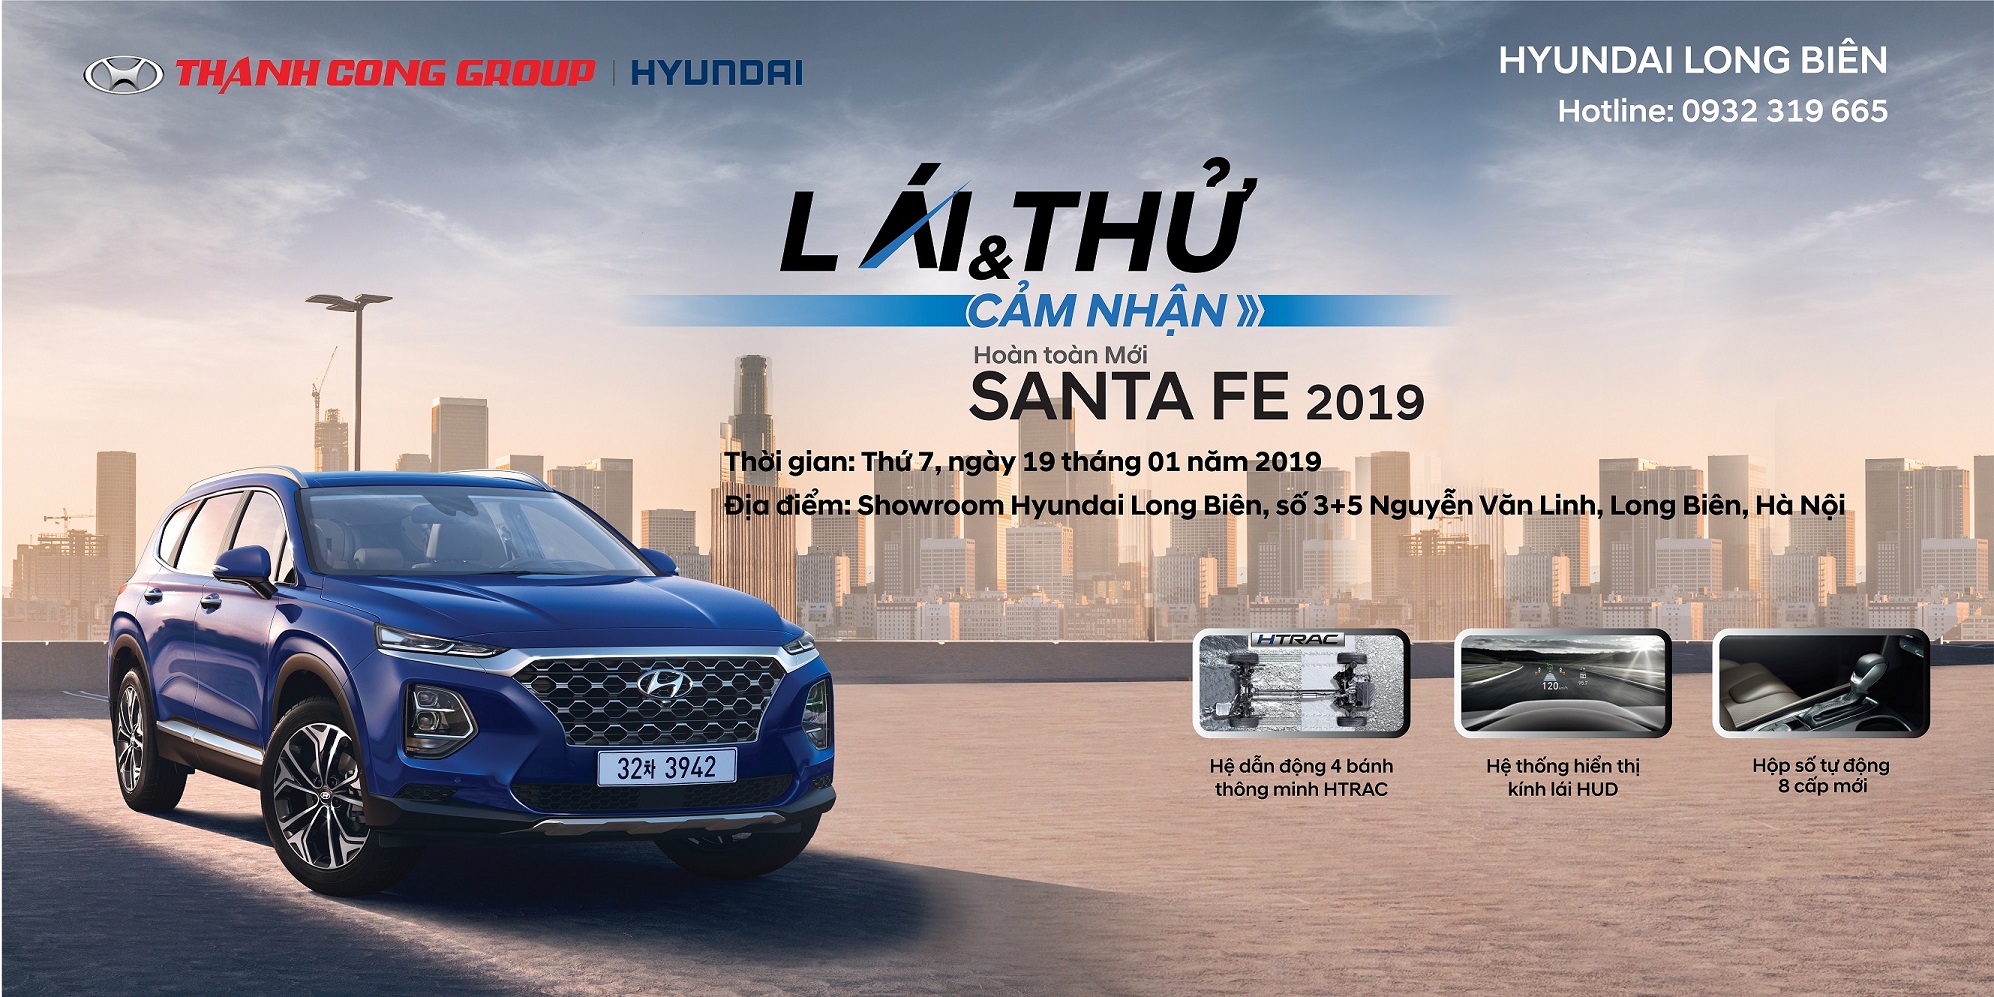 "LÁI THỬ & CẢM NHẬN SANTAFE 2019 hoàn toàn mới" tại Showroom Hyundai Long Biên, thứ 7, ngày 19/01/2018